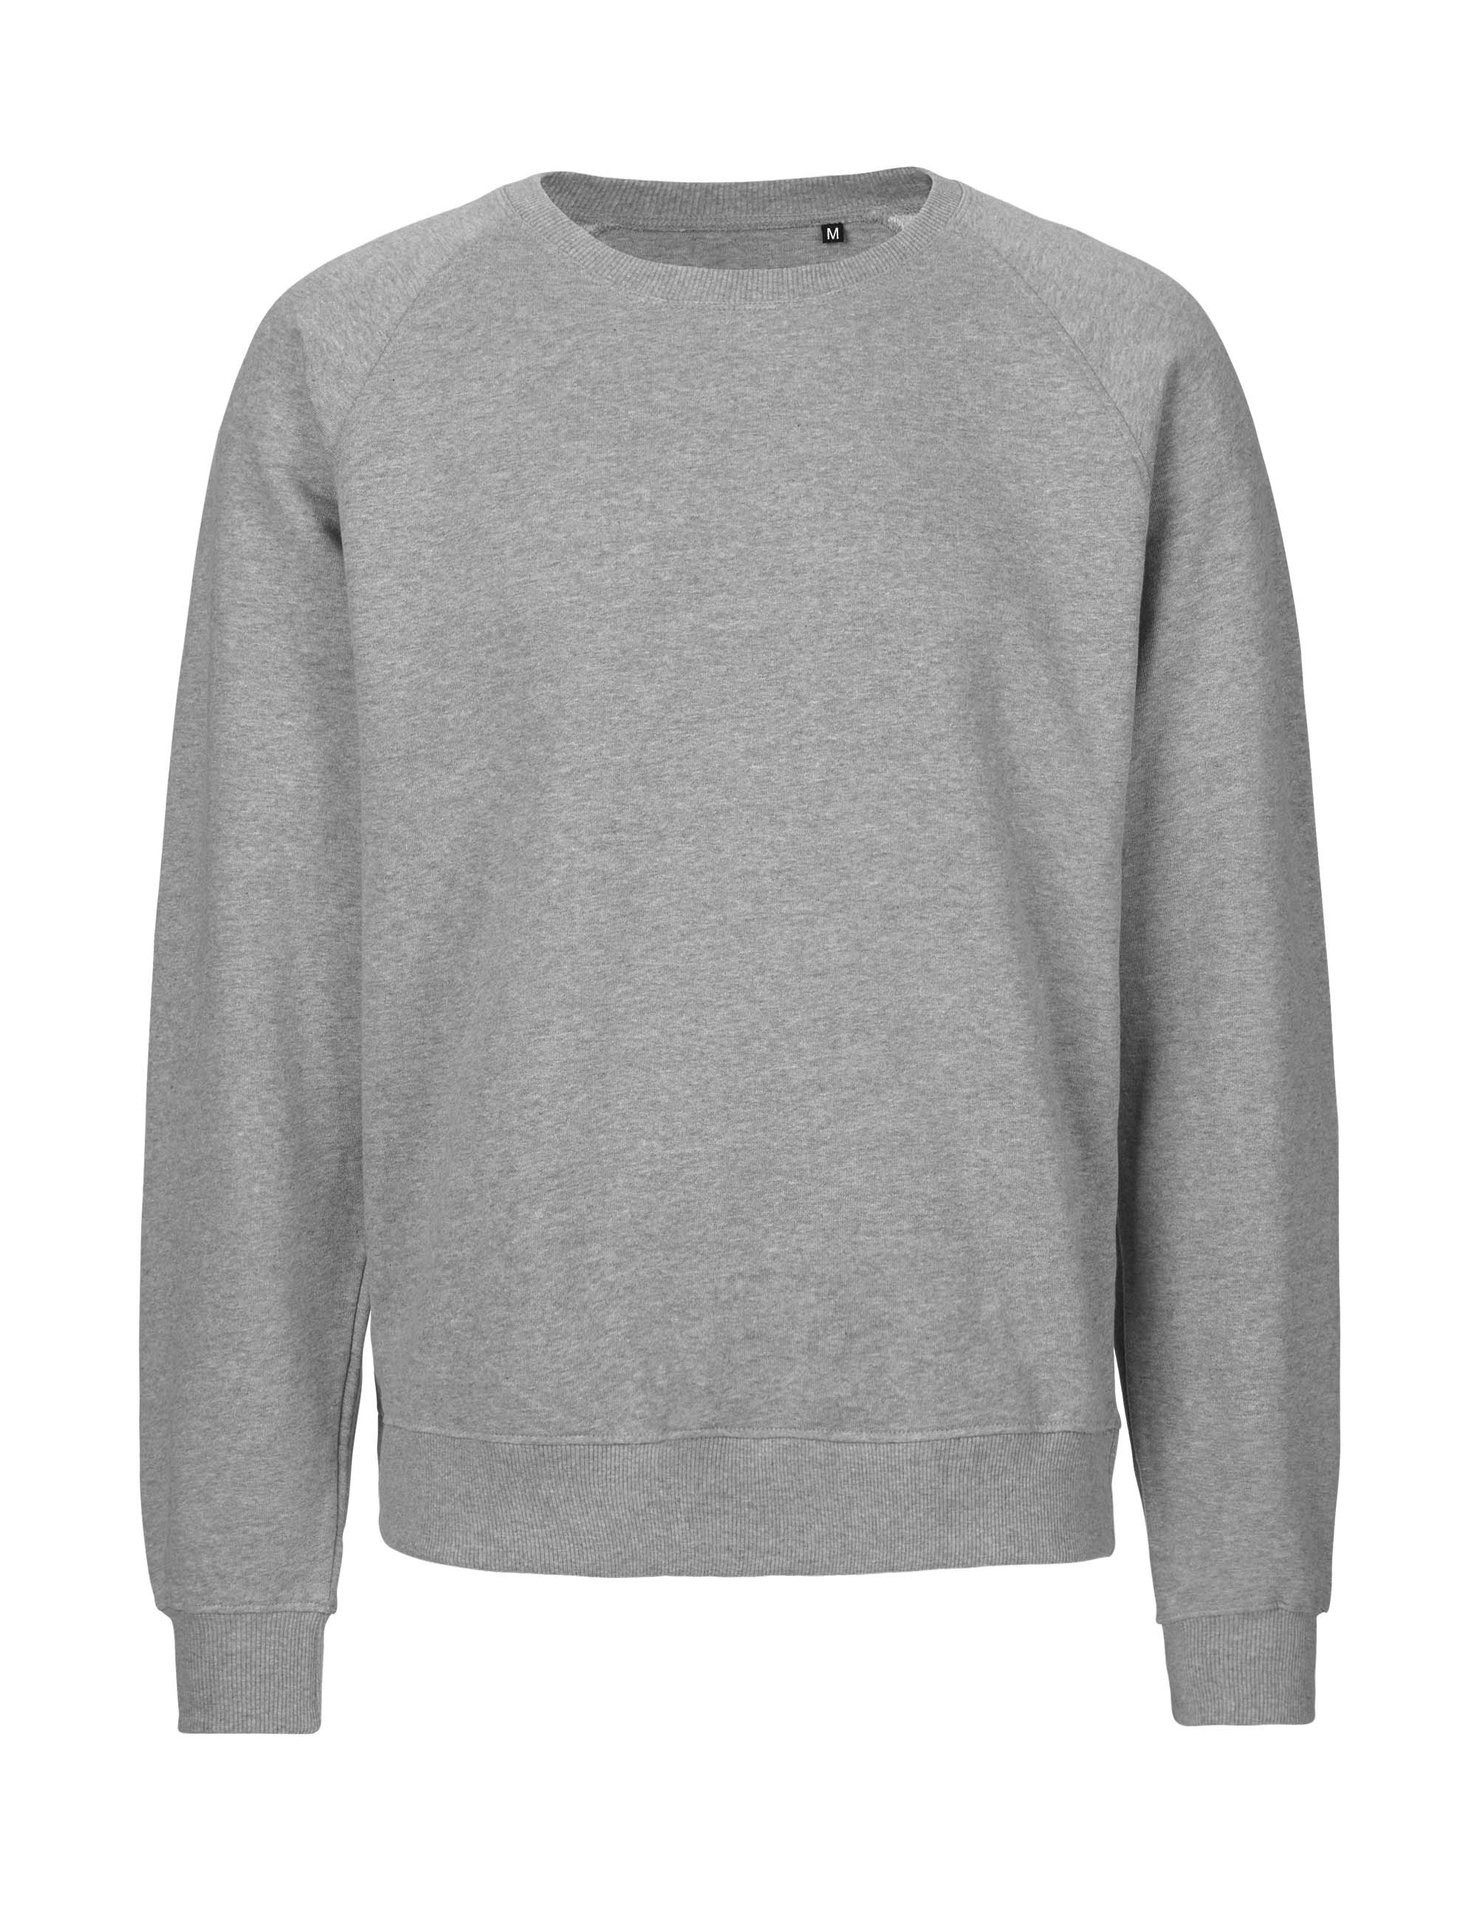 [PR/06031] Unisex Tiger Cotton Sweatshirt (Sport Grey 21, 2XL)